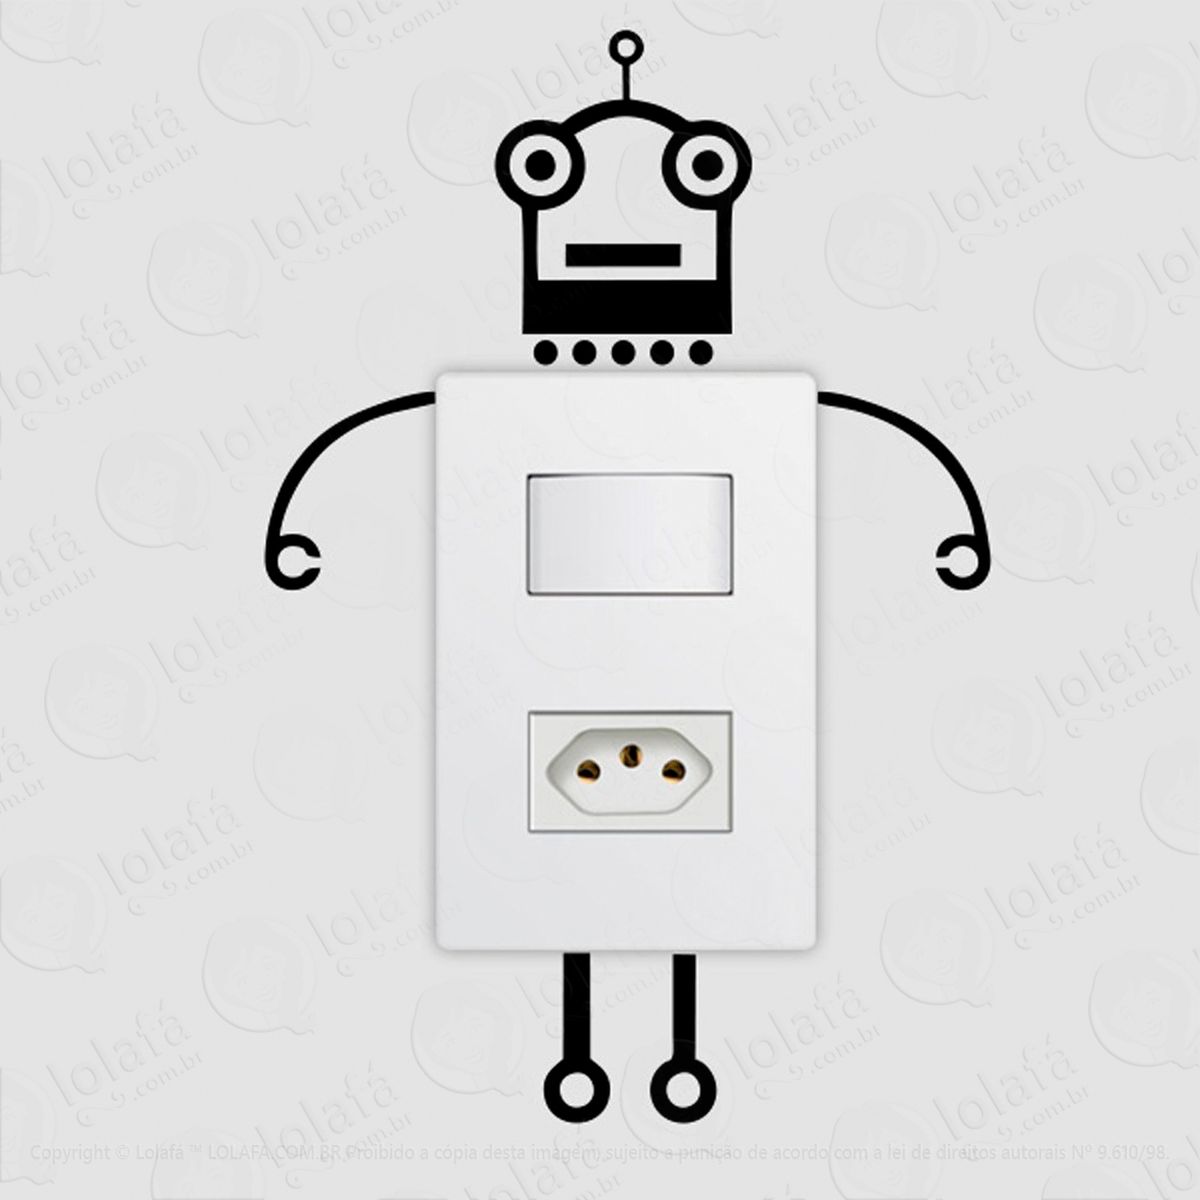 robô adesivo para interruptor e tomada - mod:89